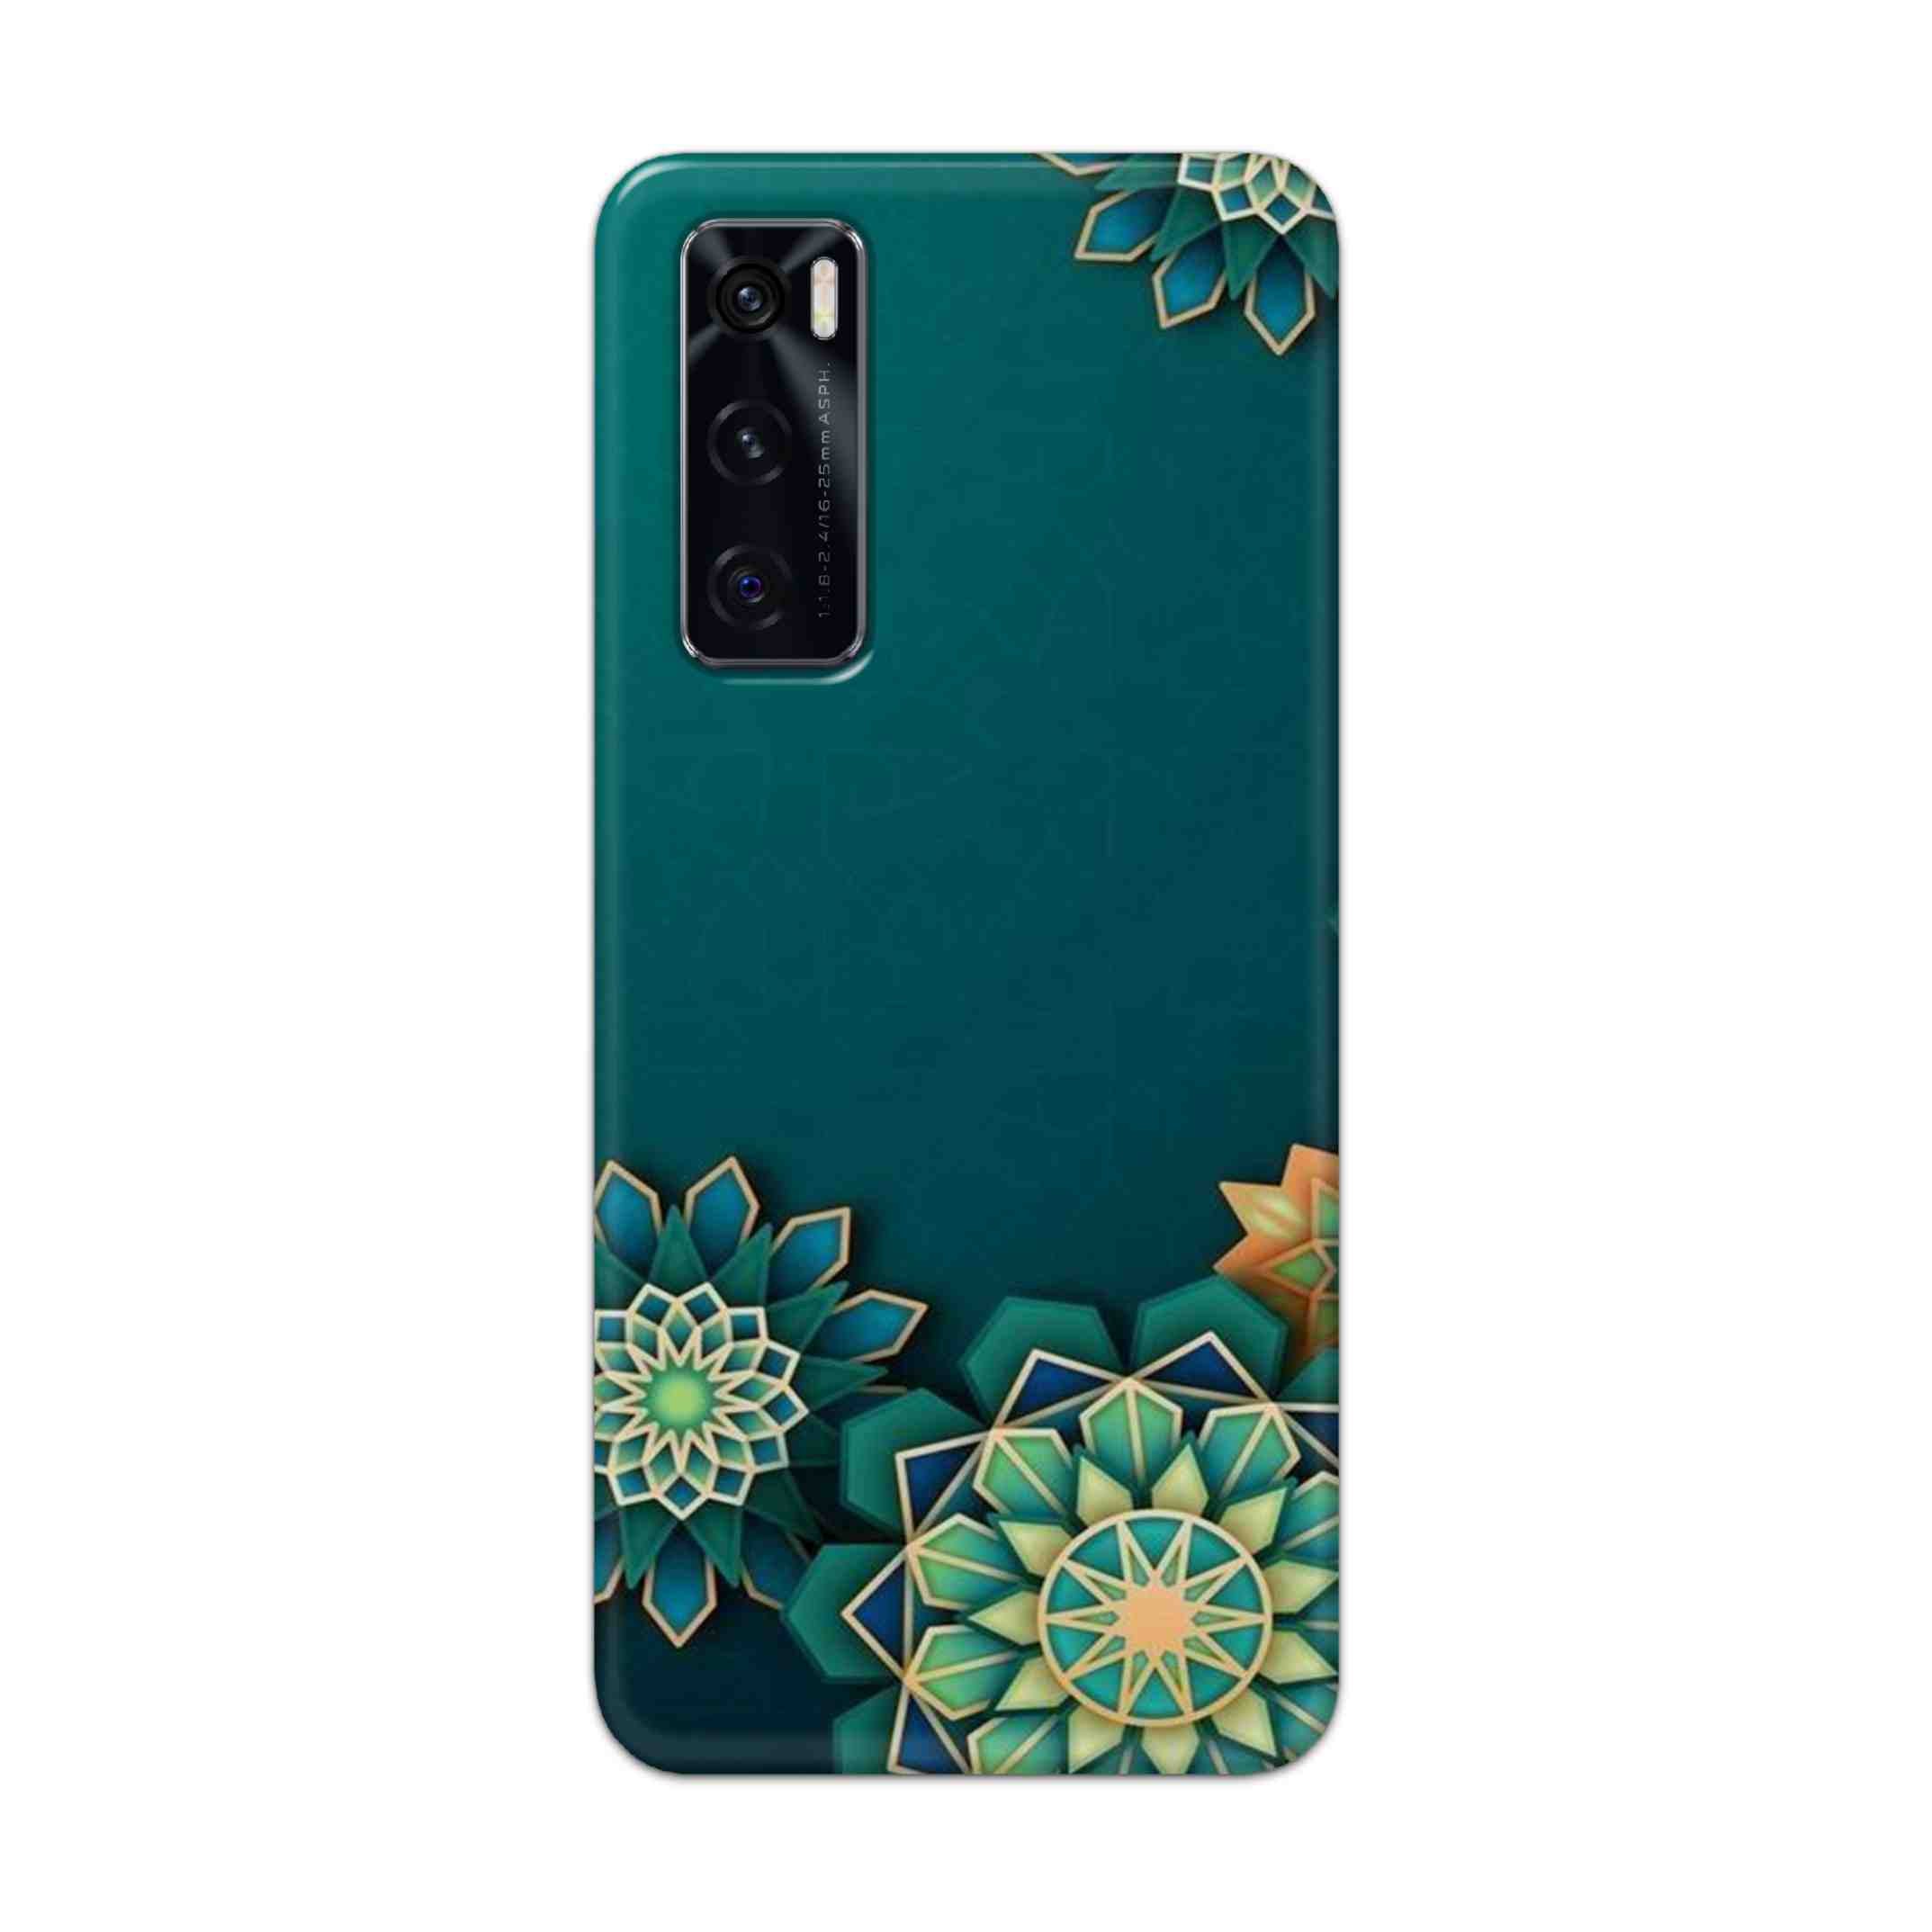 Buy Green Flower Hard Back Mobile Phone Case Cover For Vivo V20 SE Online